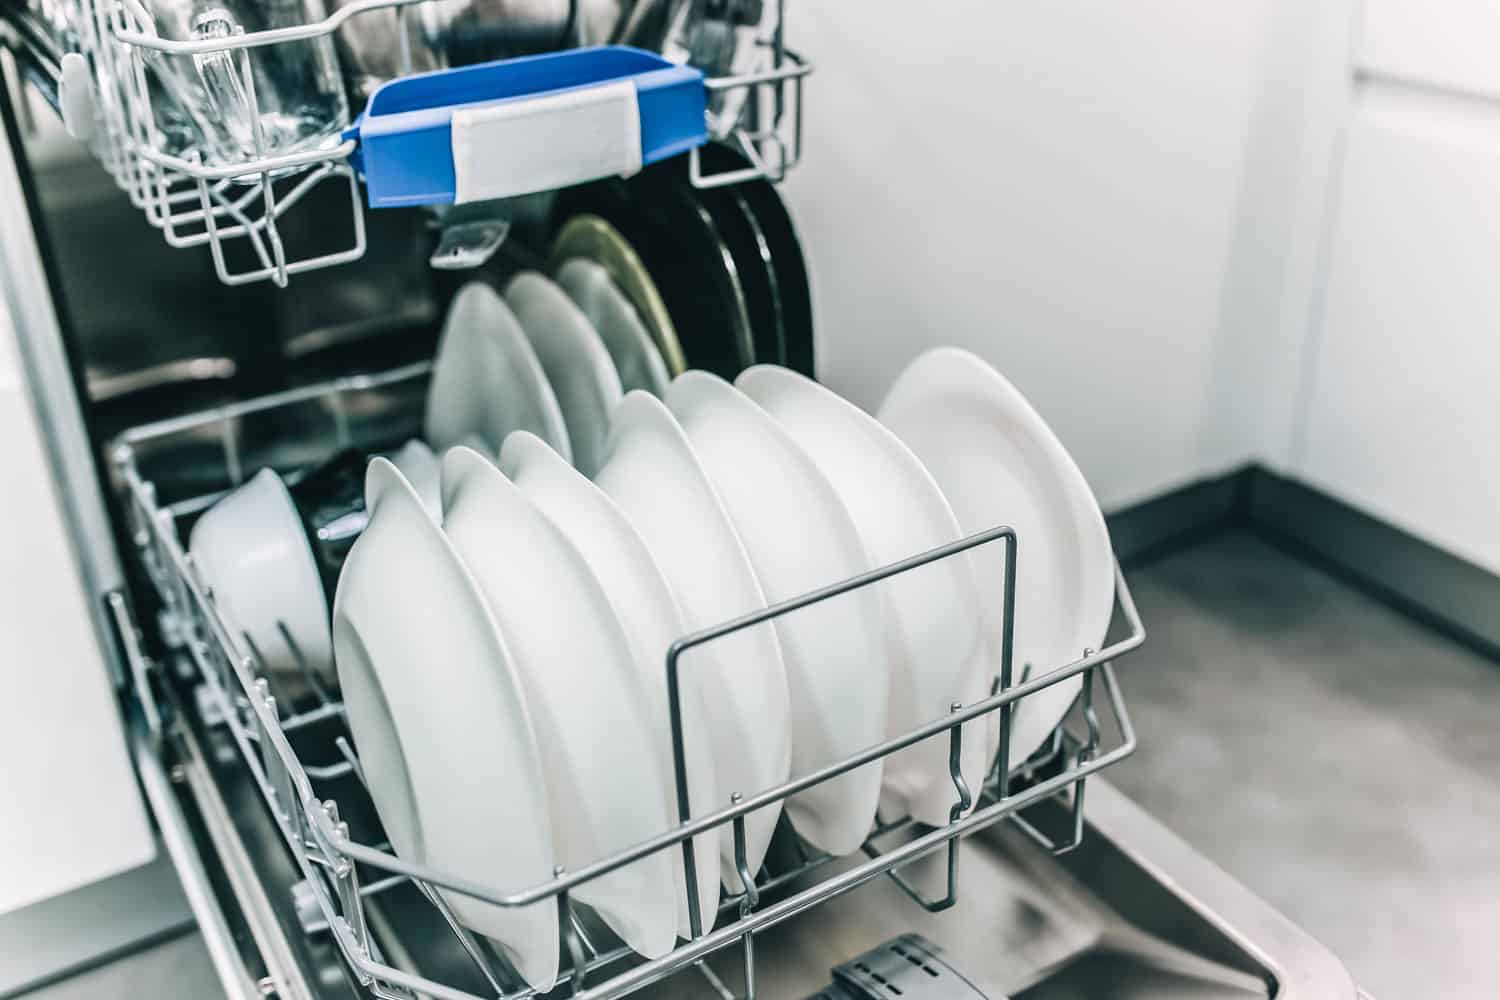 How To Unlock Frigidaire Dishwasher